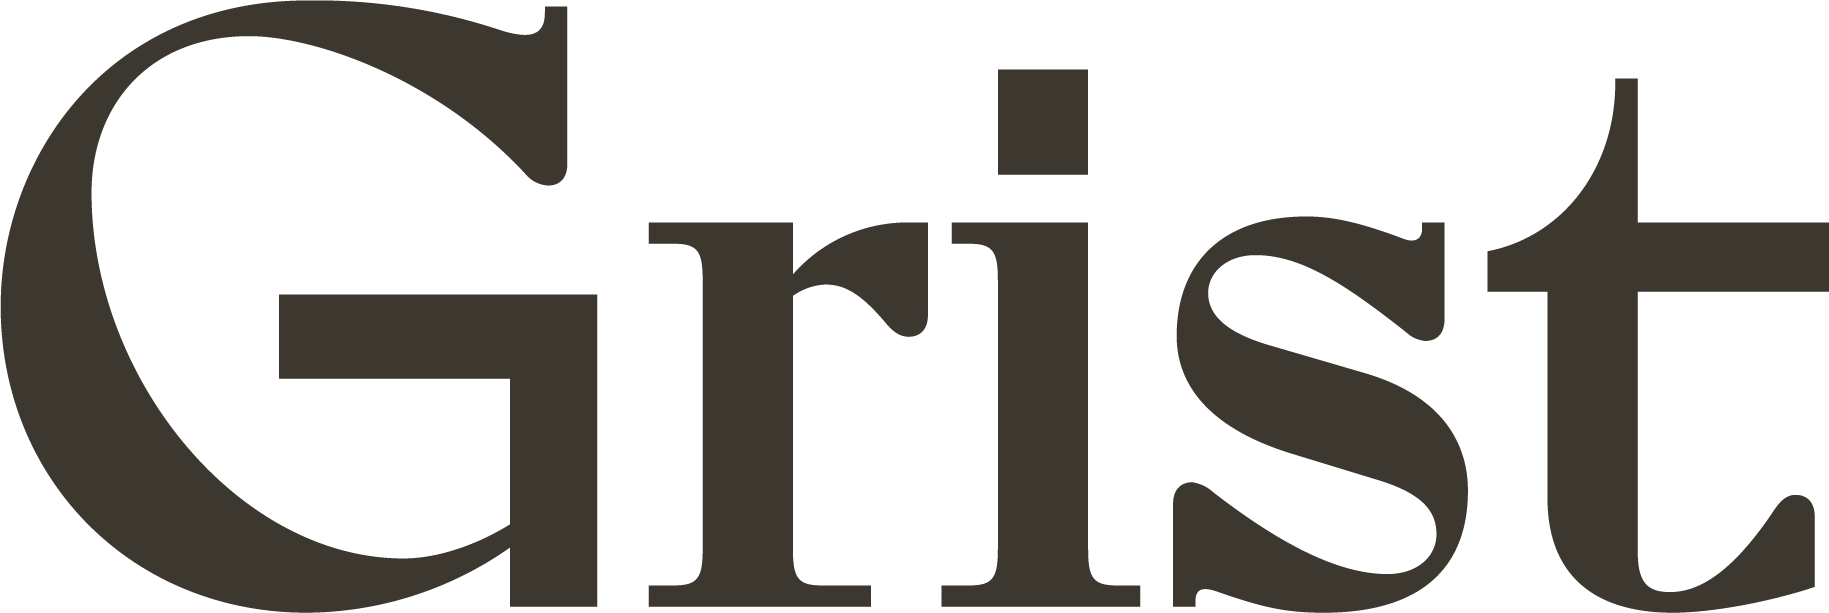 Grist logo 2.png